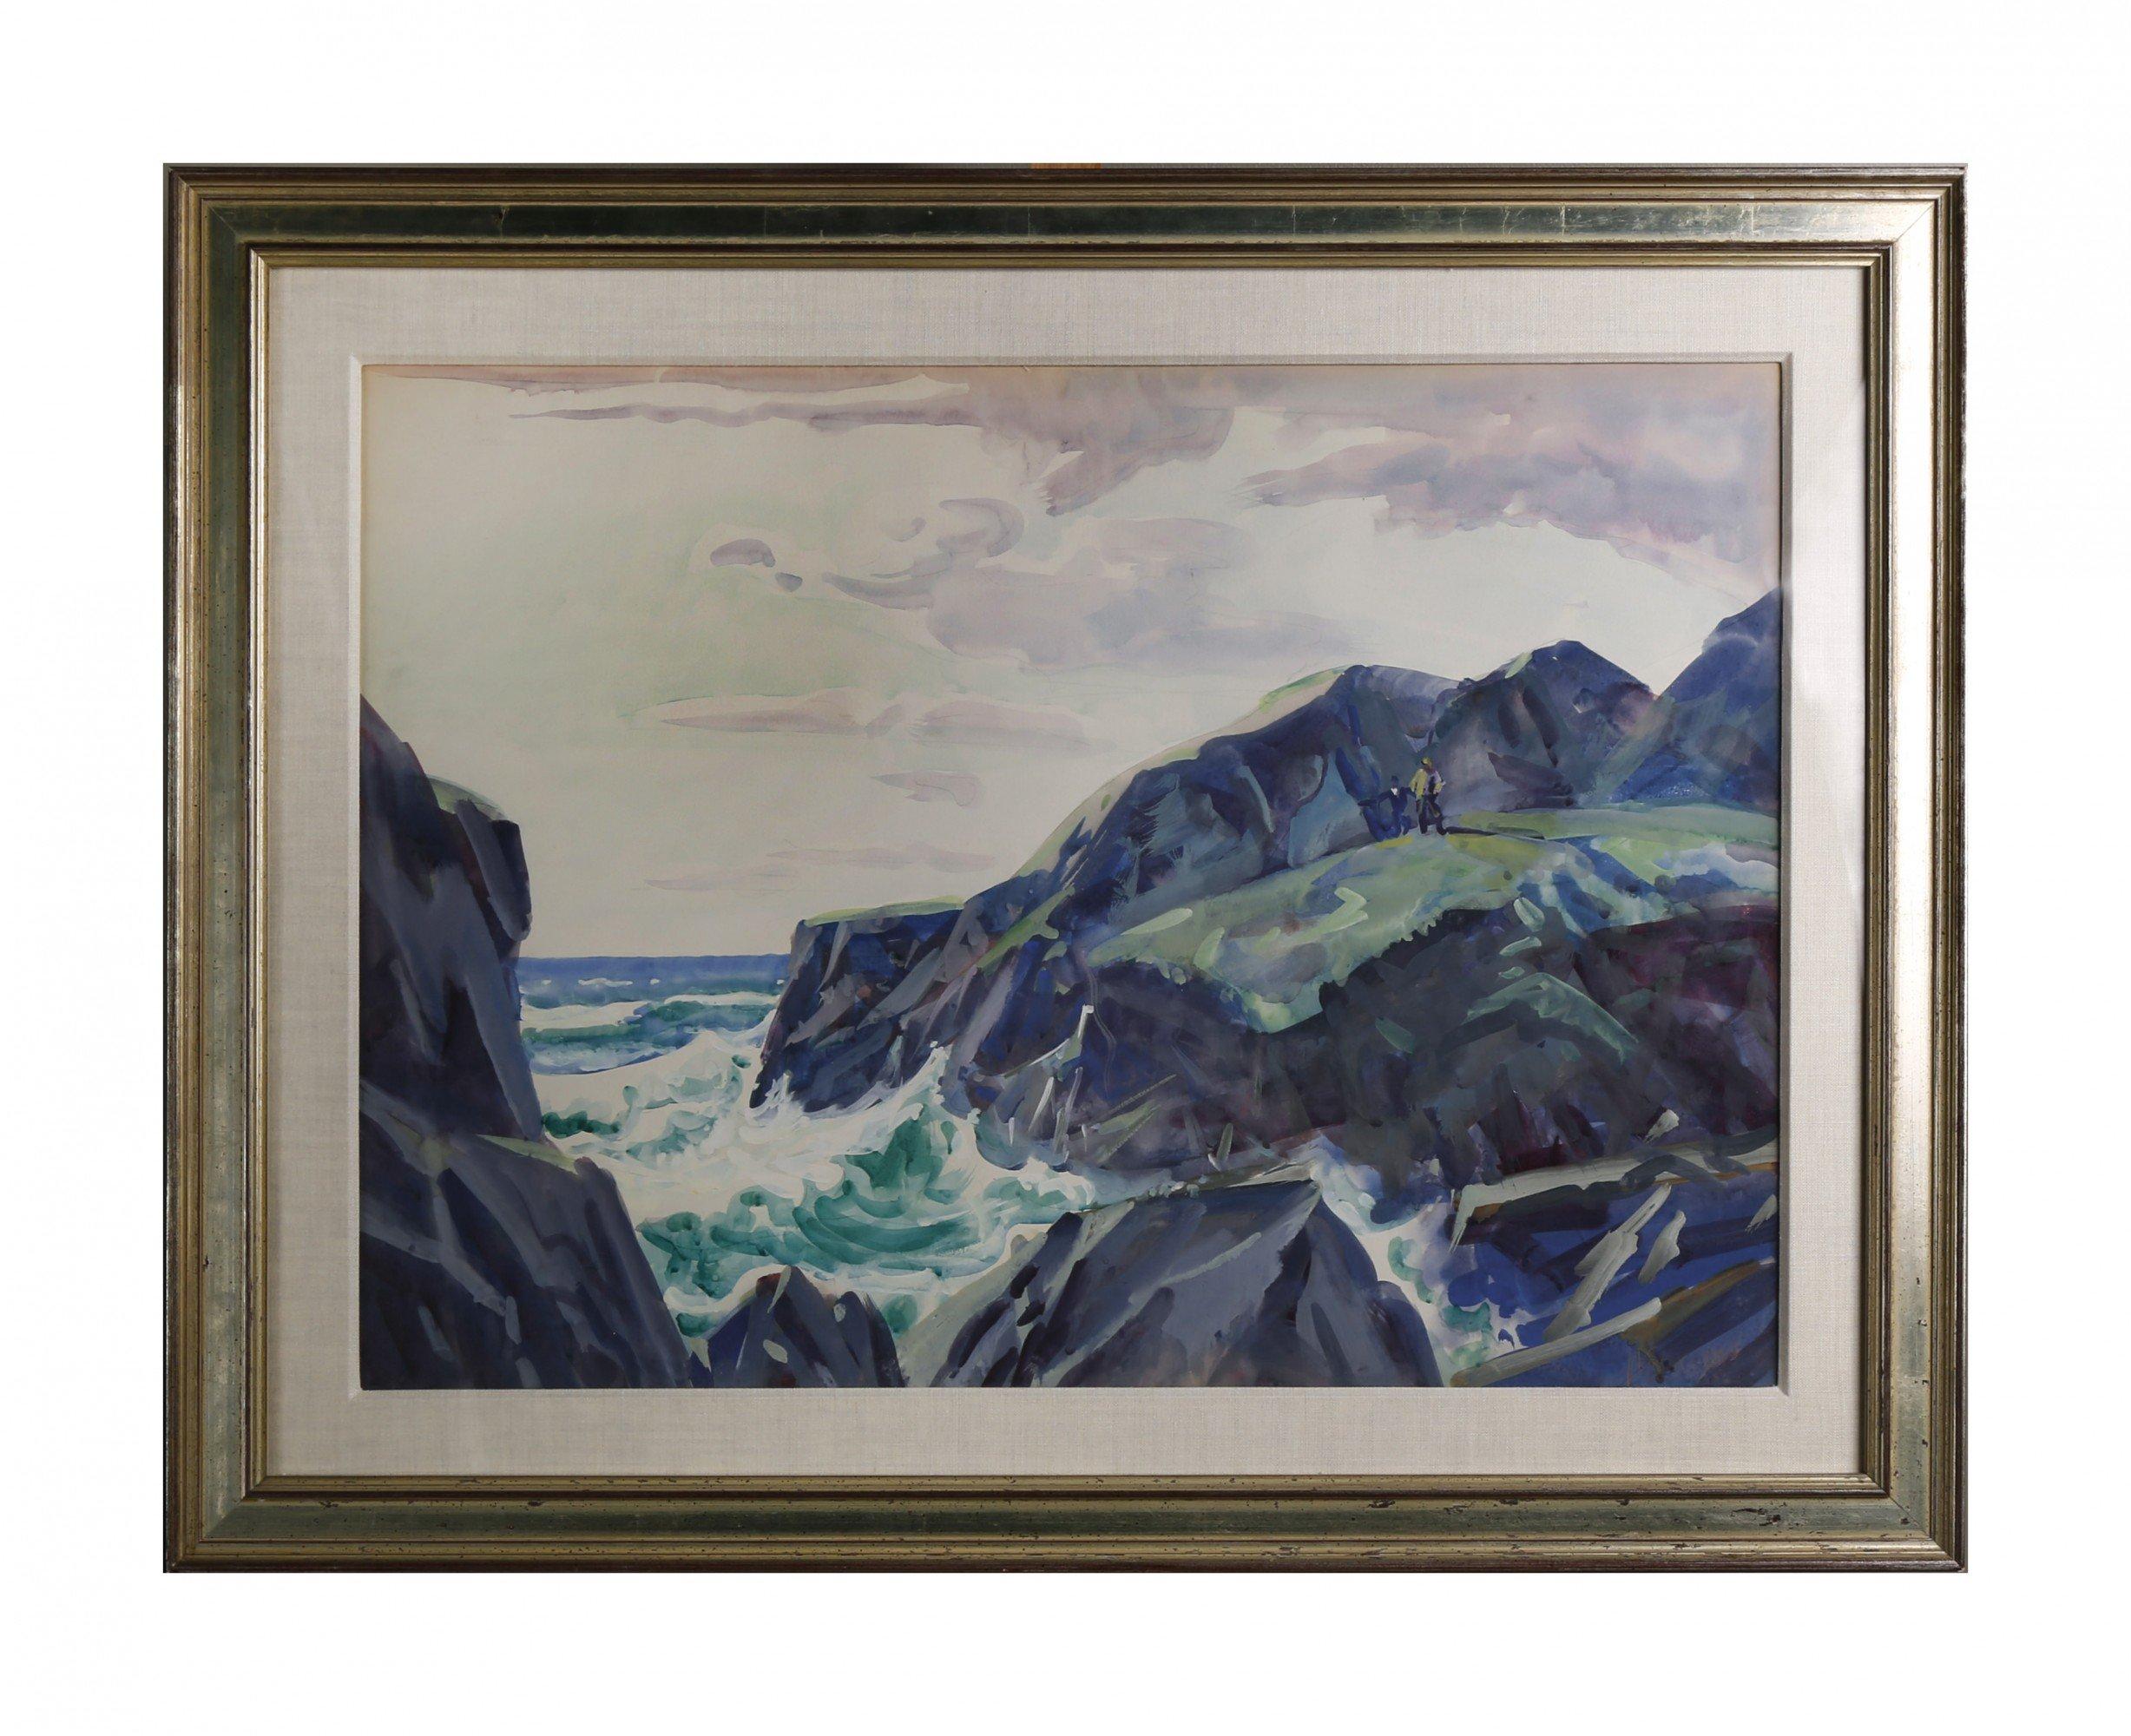 Des vagues ondulantes sur la côte atlantique, paysage marin du milieu du siècle, artiste de l'école de Cleveland - Art de Frank Wilcox